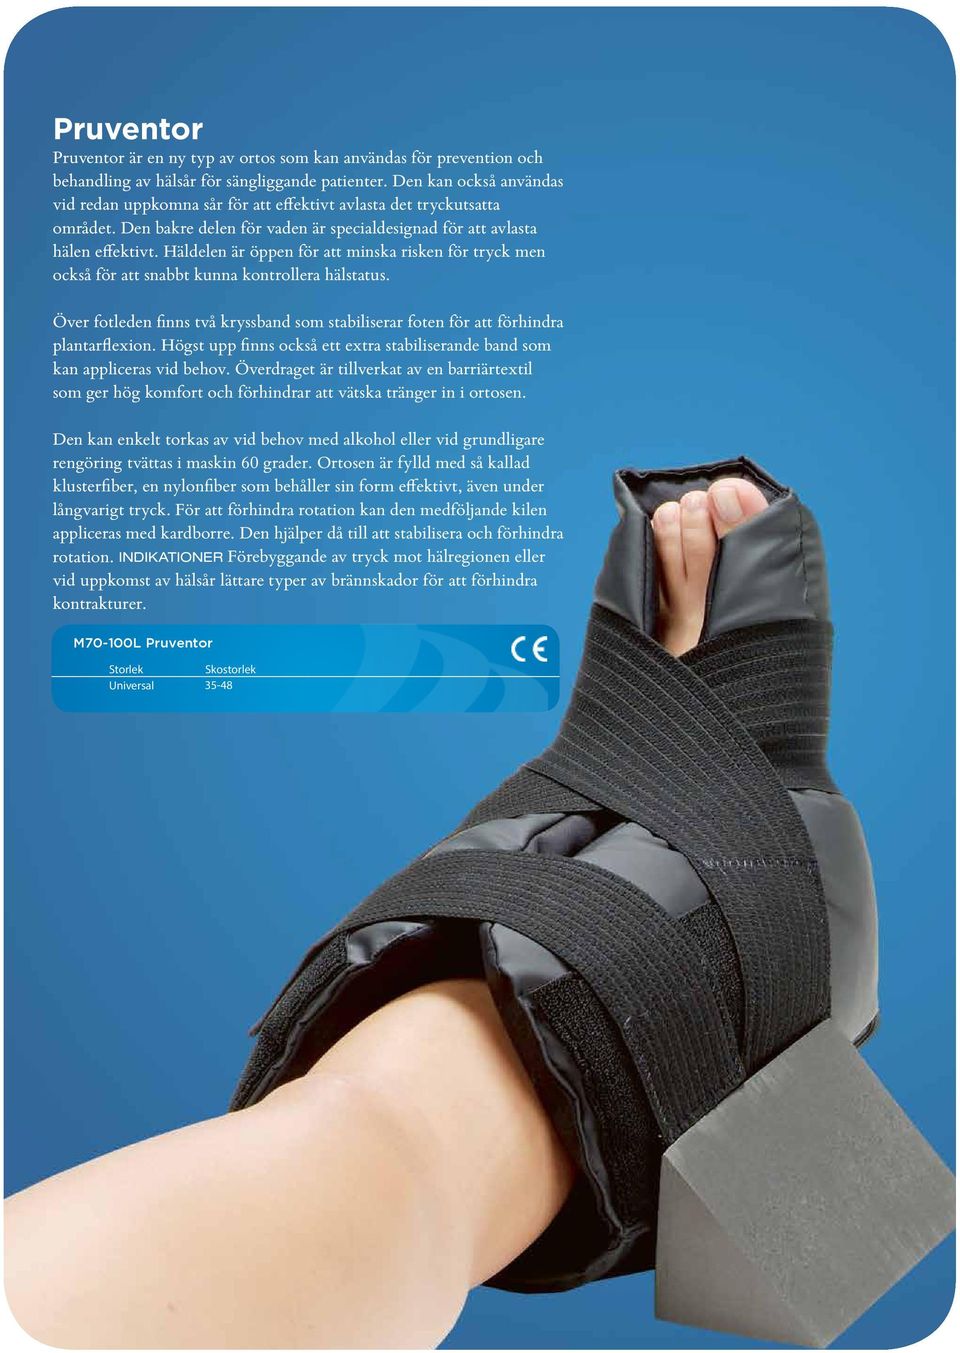 Häldelen är öppen för att minska risken för tryck men också för att snabbt kunna kontrollera hälstatus. Över fotleden finns två kryssband som stabiliserar foten för att förhindra plantarflexion.